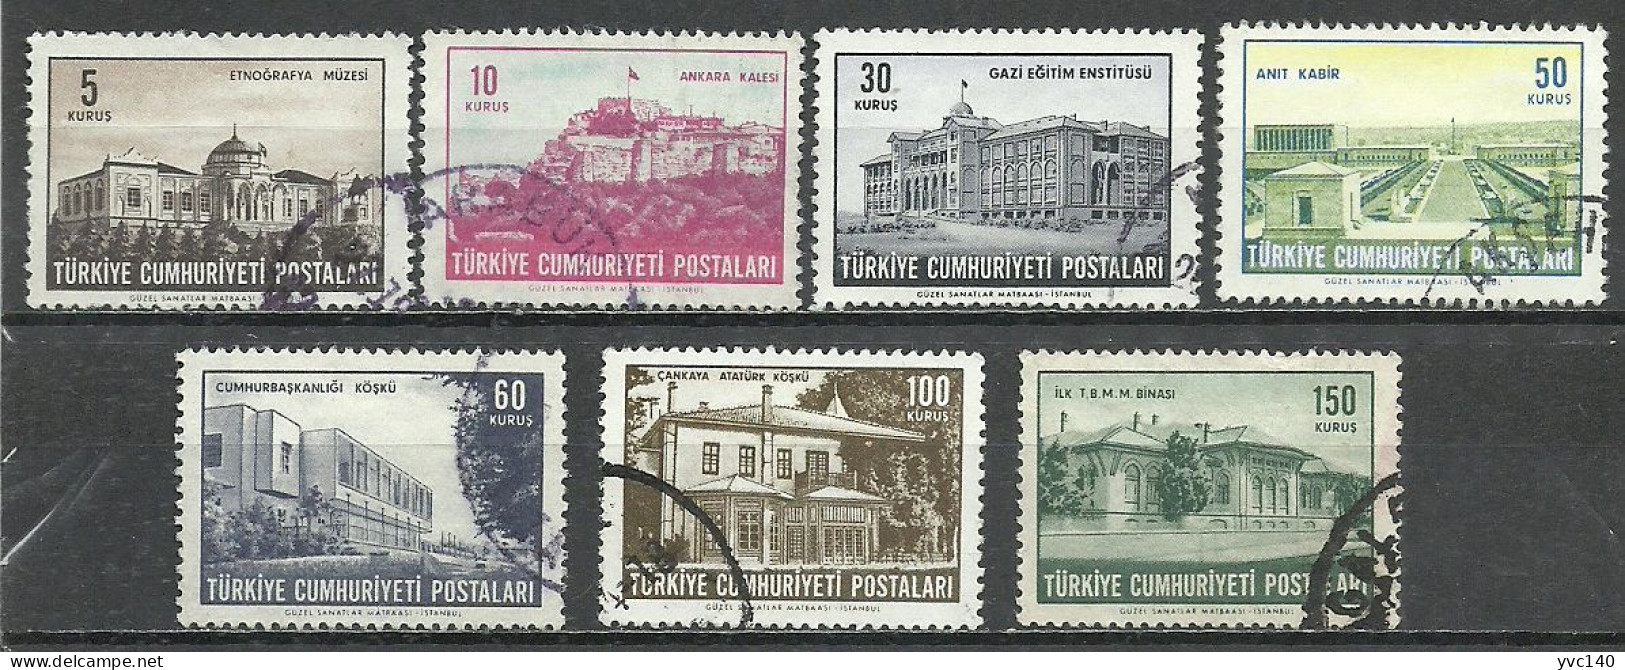 Turkey: 1963 Regular Issue Stamps - Gebruikt